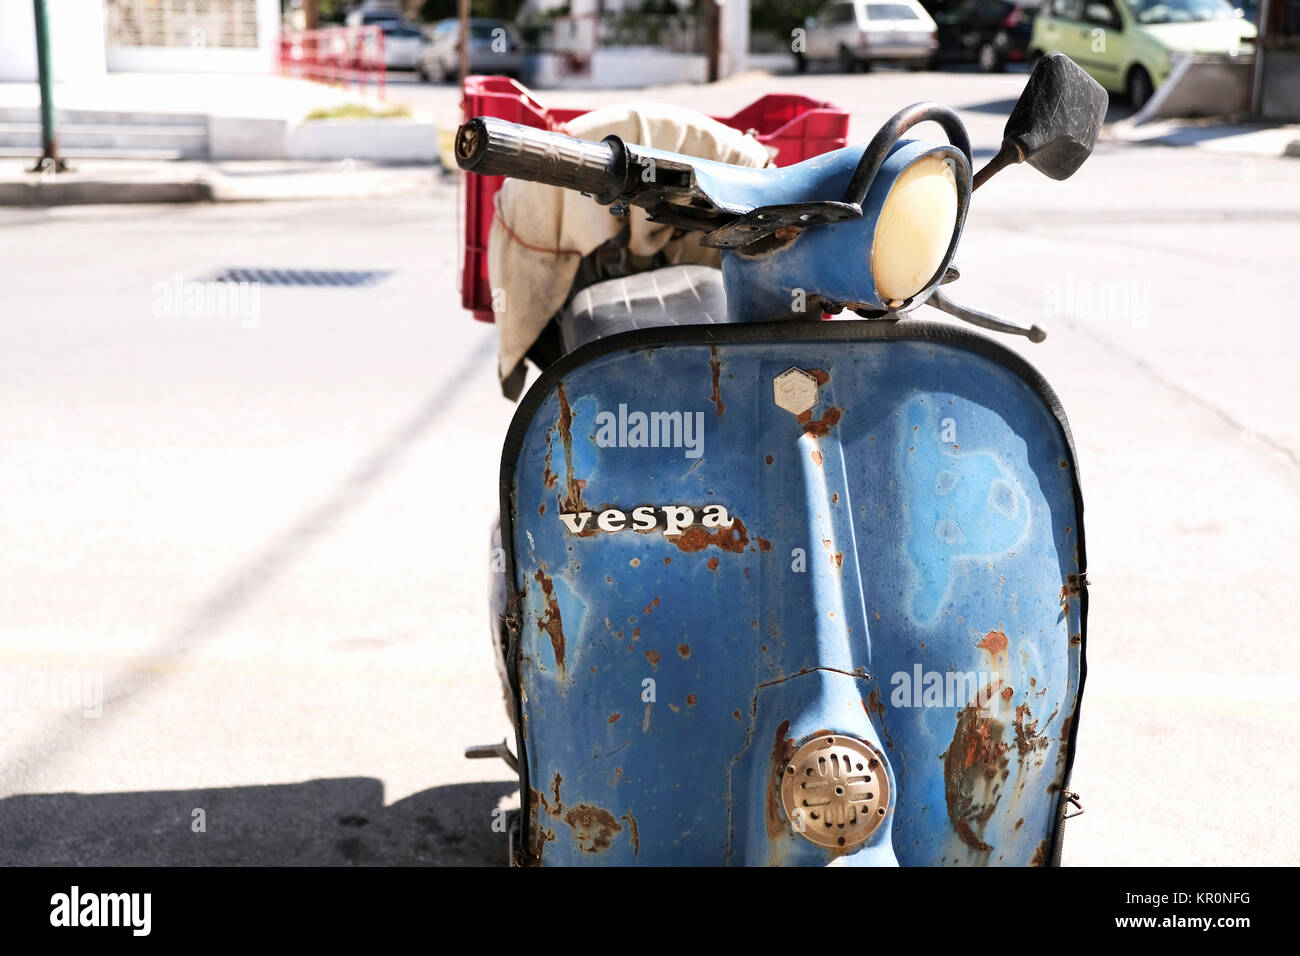 Un vieux, rouillé, bien utilisés Vespa scooter. La photo montre clairement l'insigne distinctif Vespa mis en évidence contre un bleu rouillé, carénage battues Banque D'Images